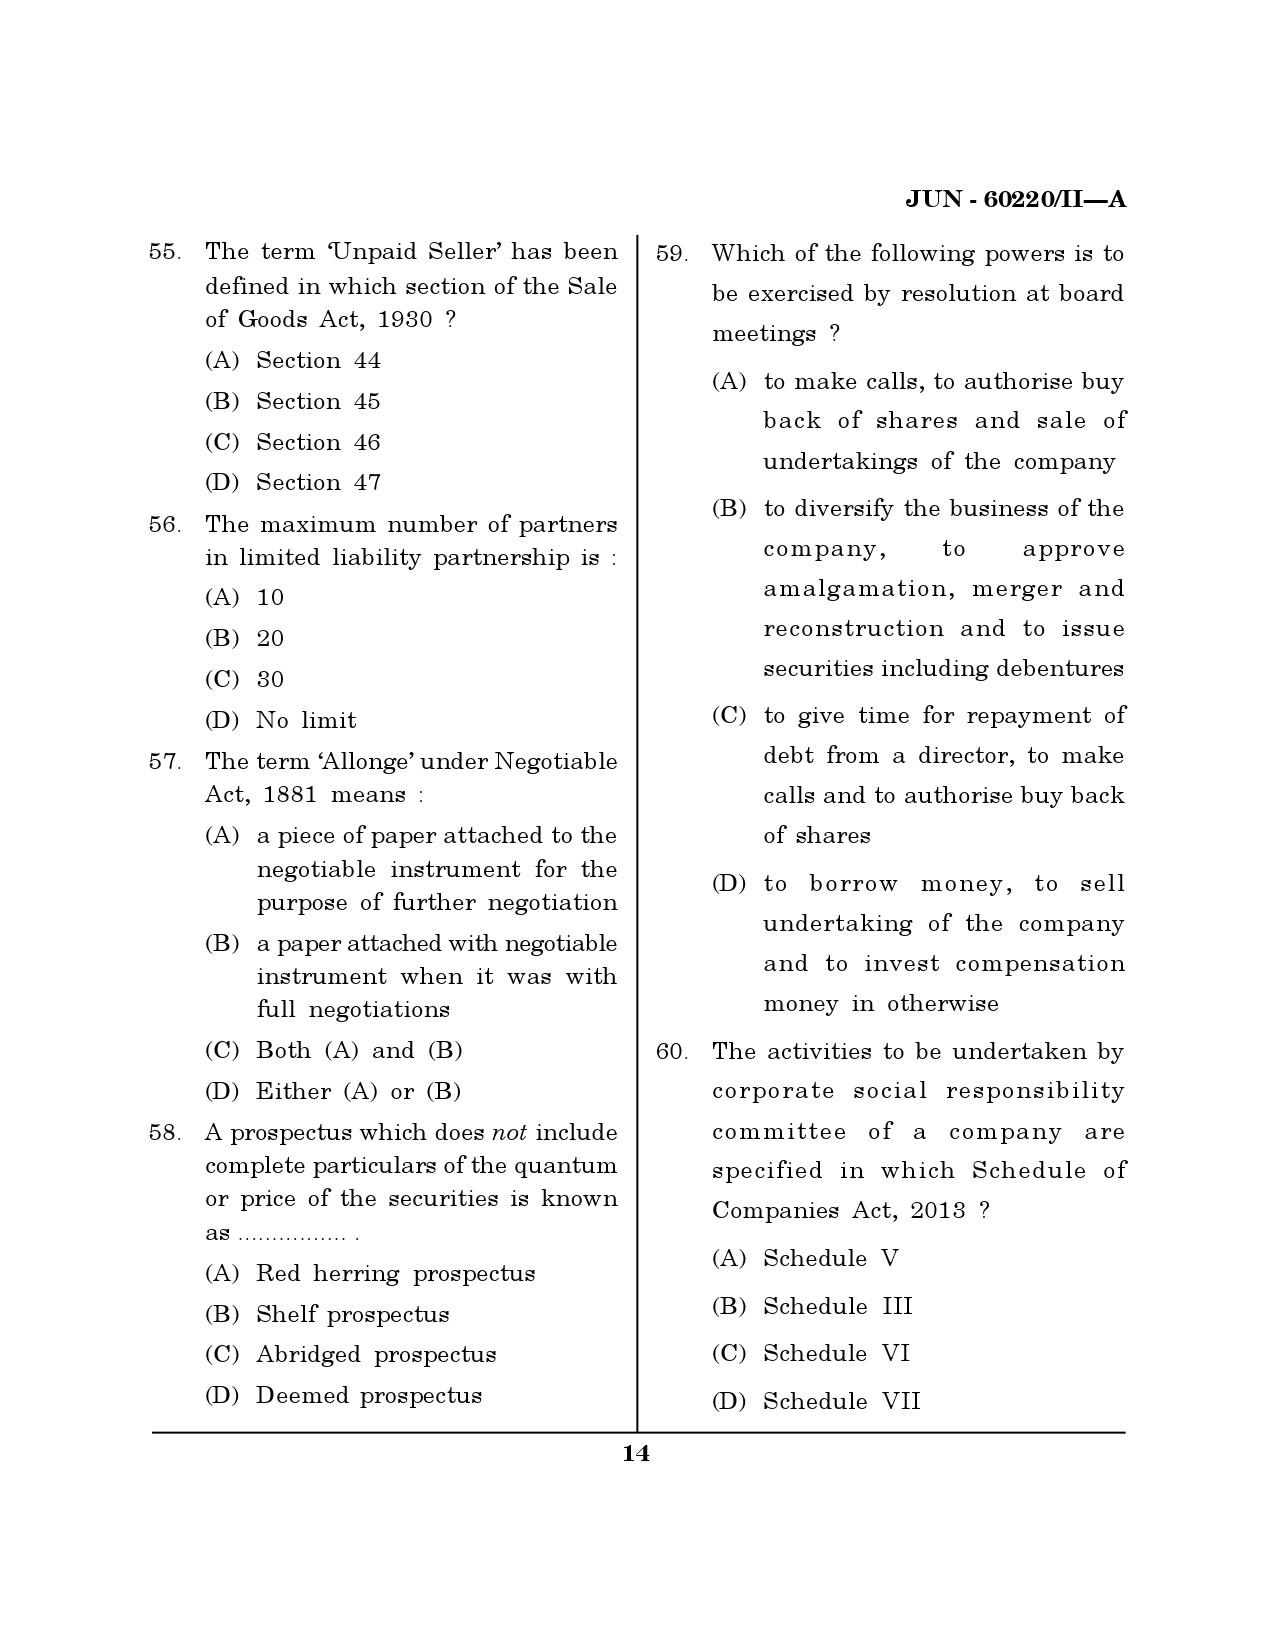 Maharashtra SET Law Question Paper II June 2020 13